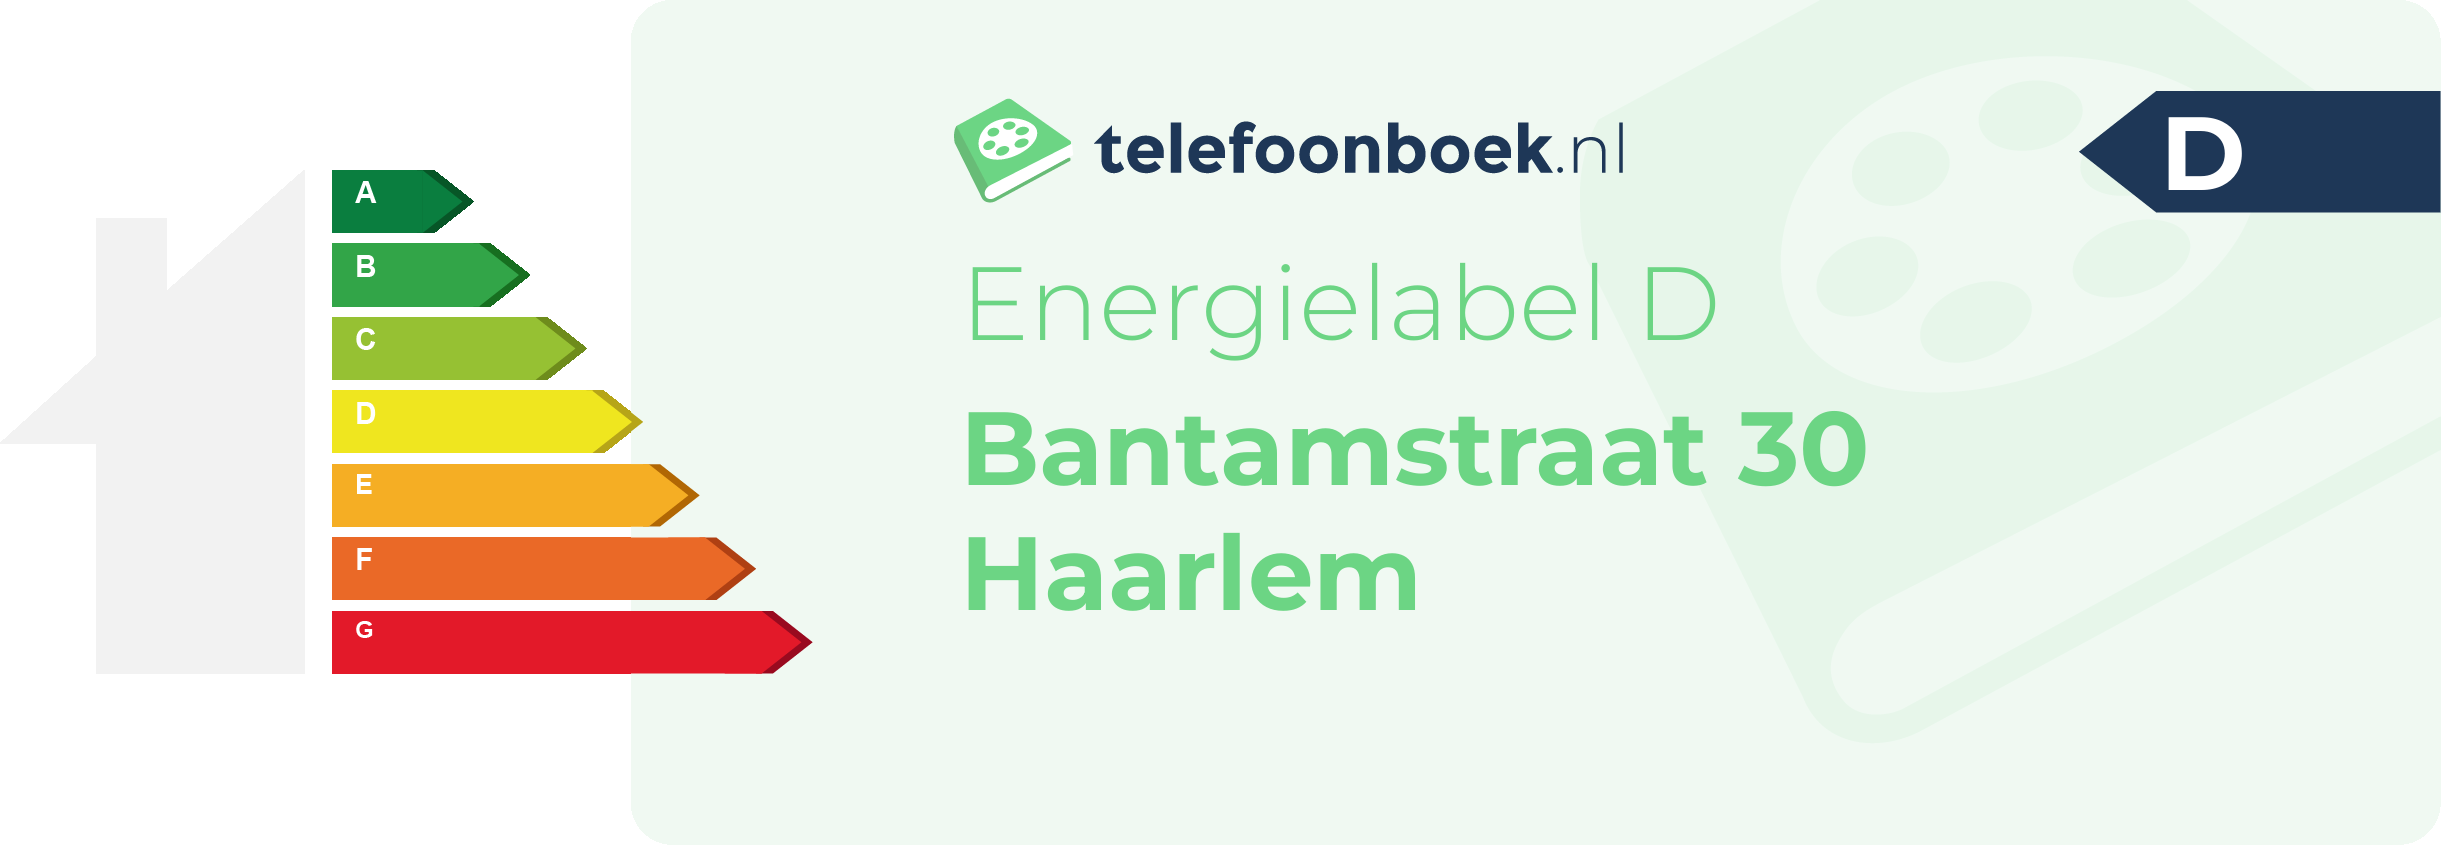 Energielabel Bantamstraat 30 Haarlem